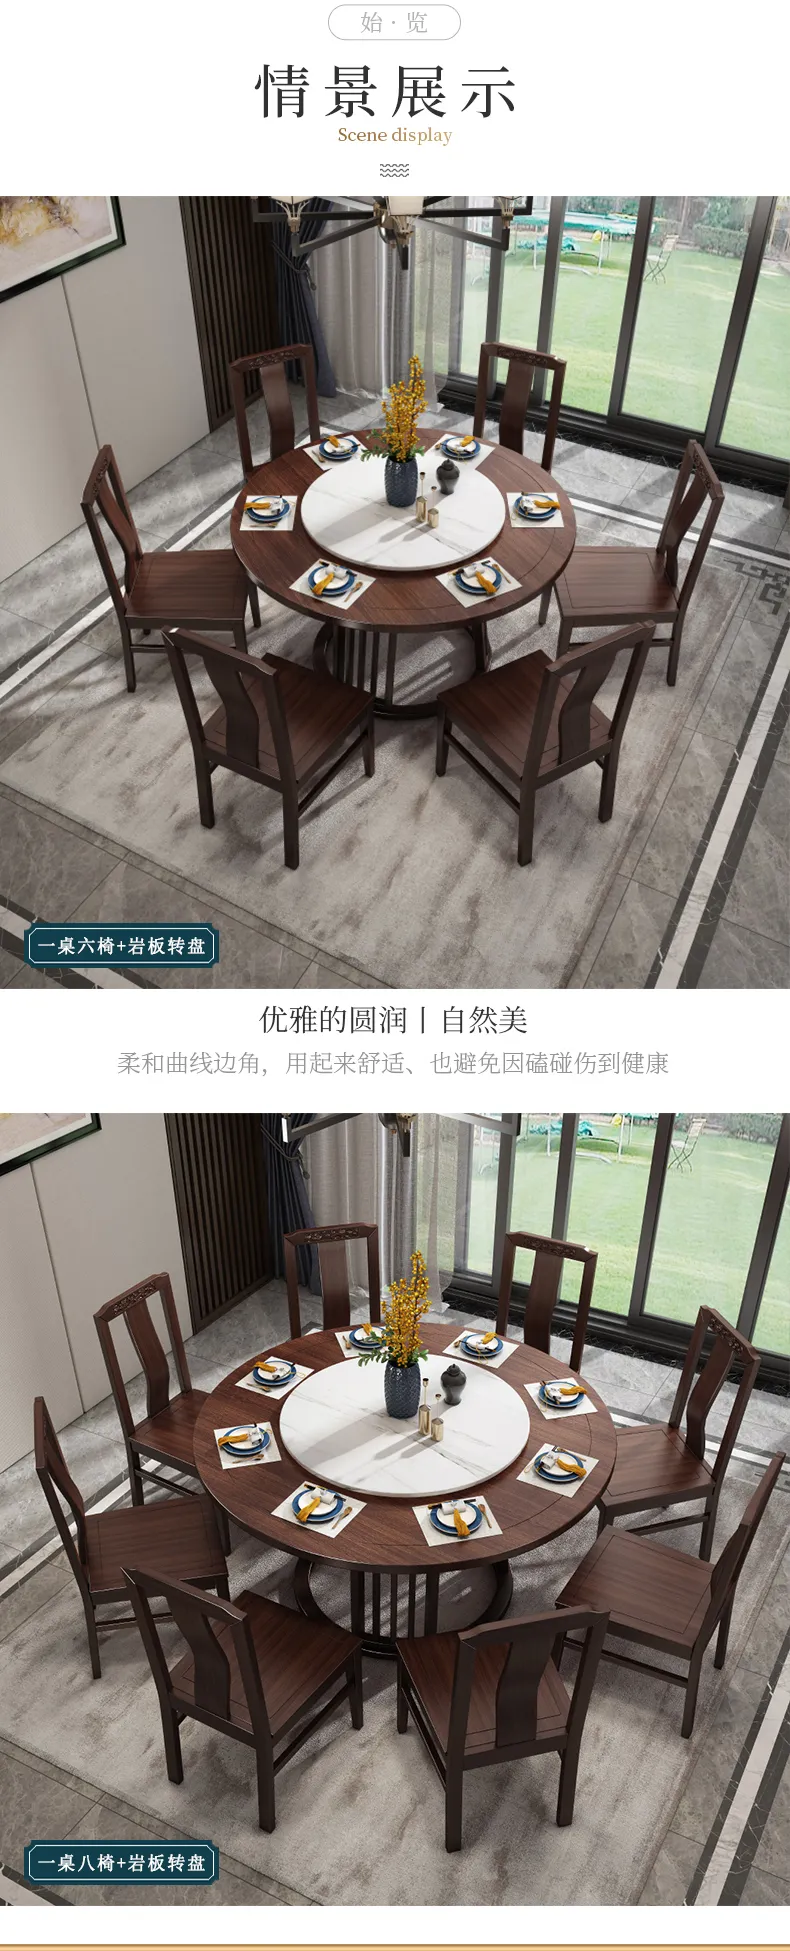 华松居 乌金木新中式实木餐桌简约家用圆桌饭桌餐桌椅 #2002(图3)